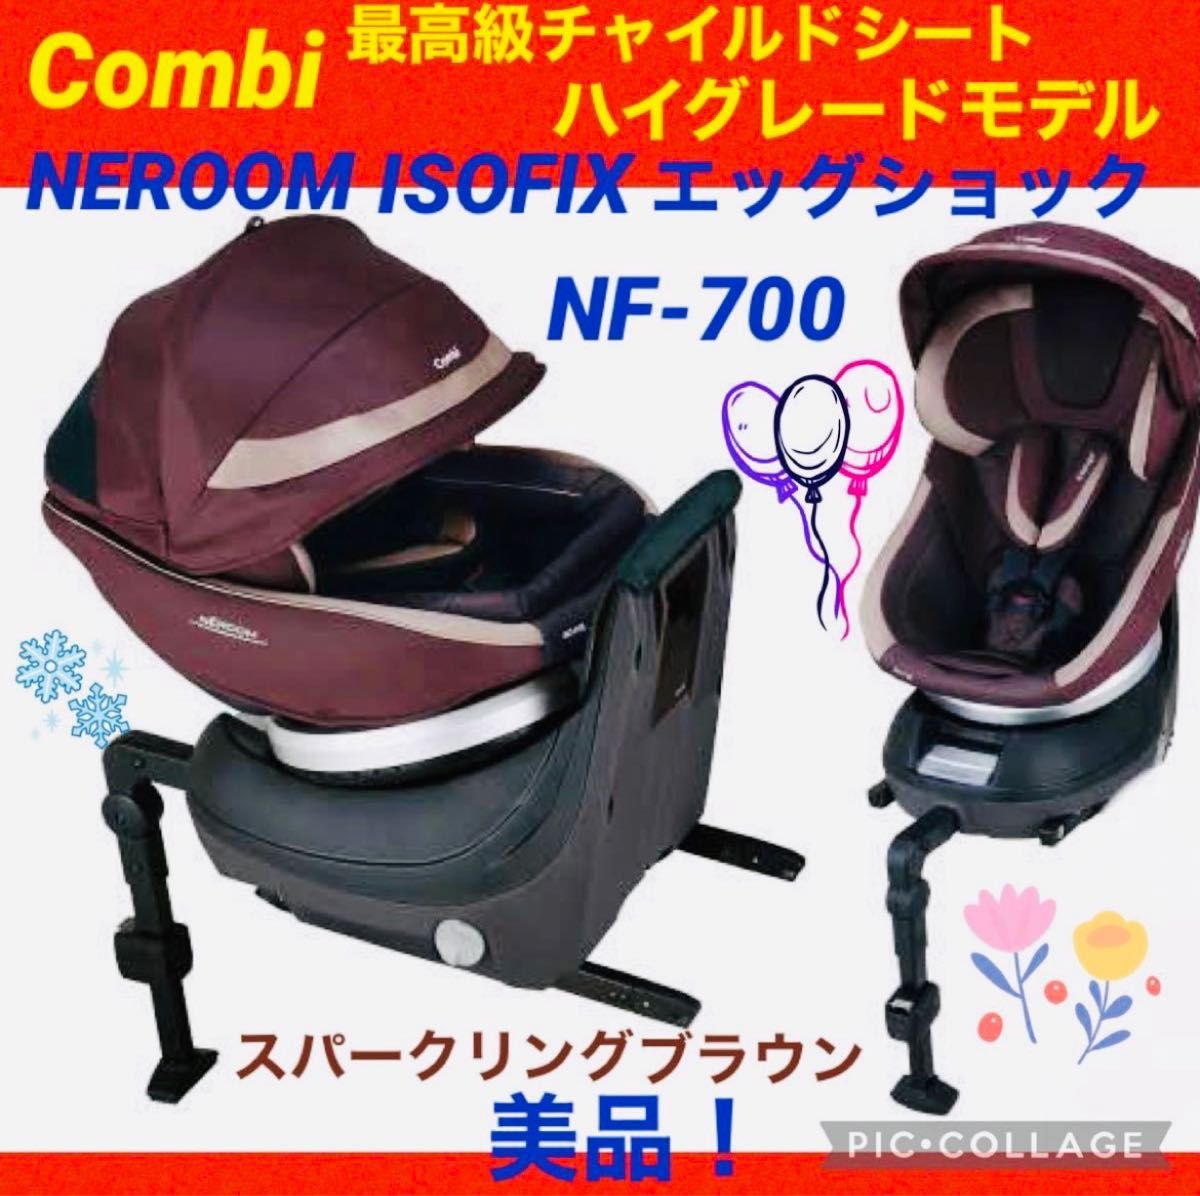 Combi コンビ ホワイトレーベル ネルーム NC-520 エッグショック 